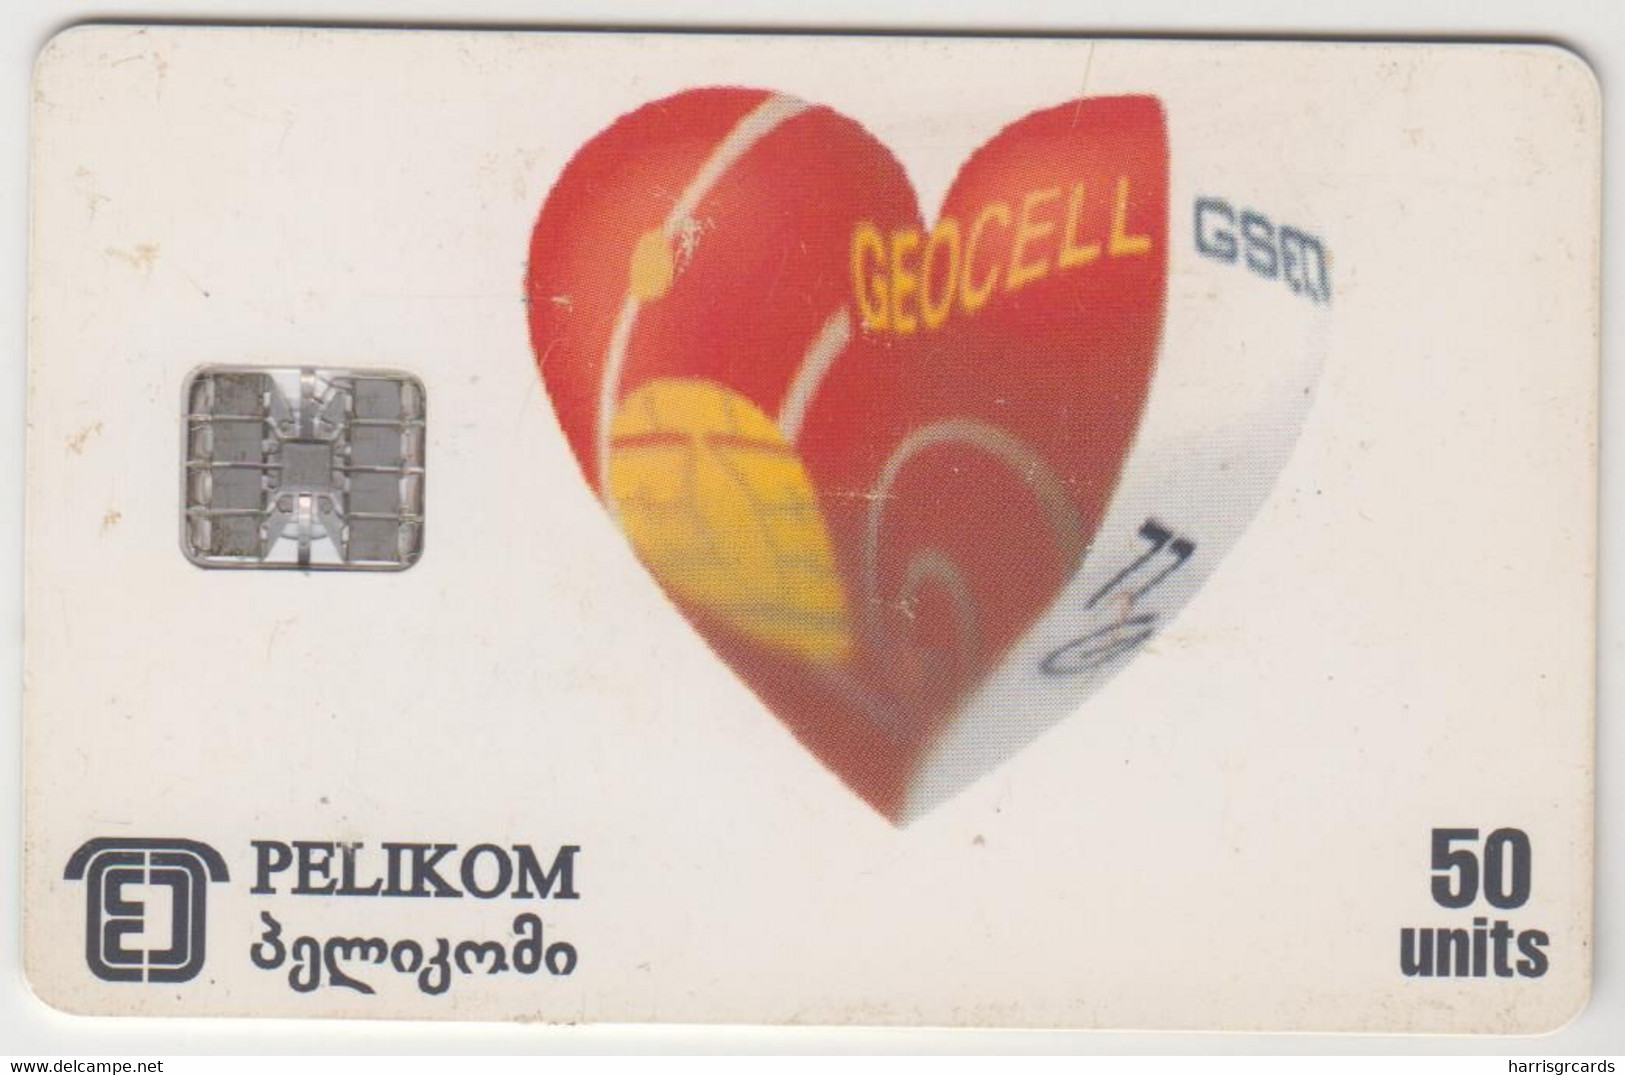 GEORGIA - Geocell / GEORGIAN Post Bank, 50 U, Tirage 70.000, Used - Georgië